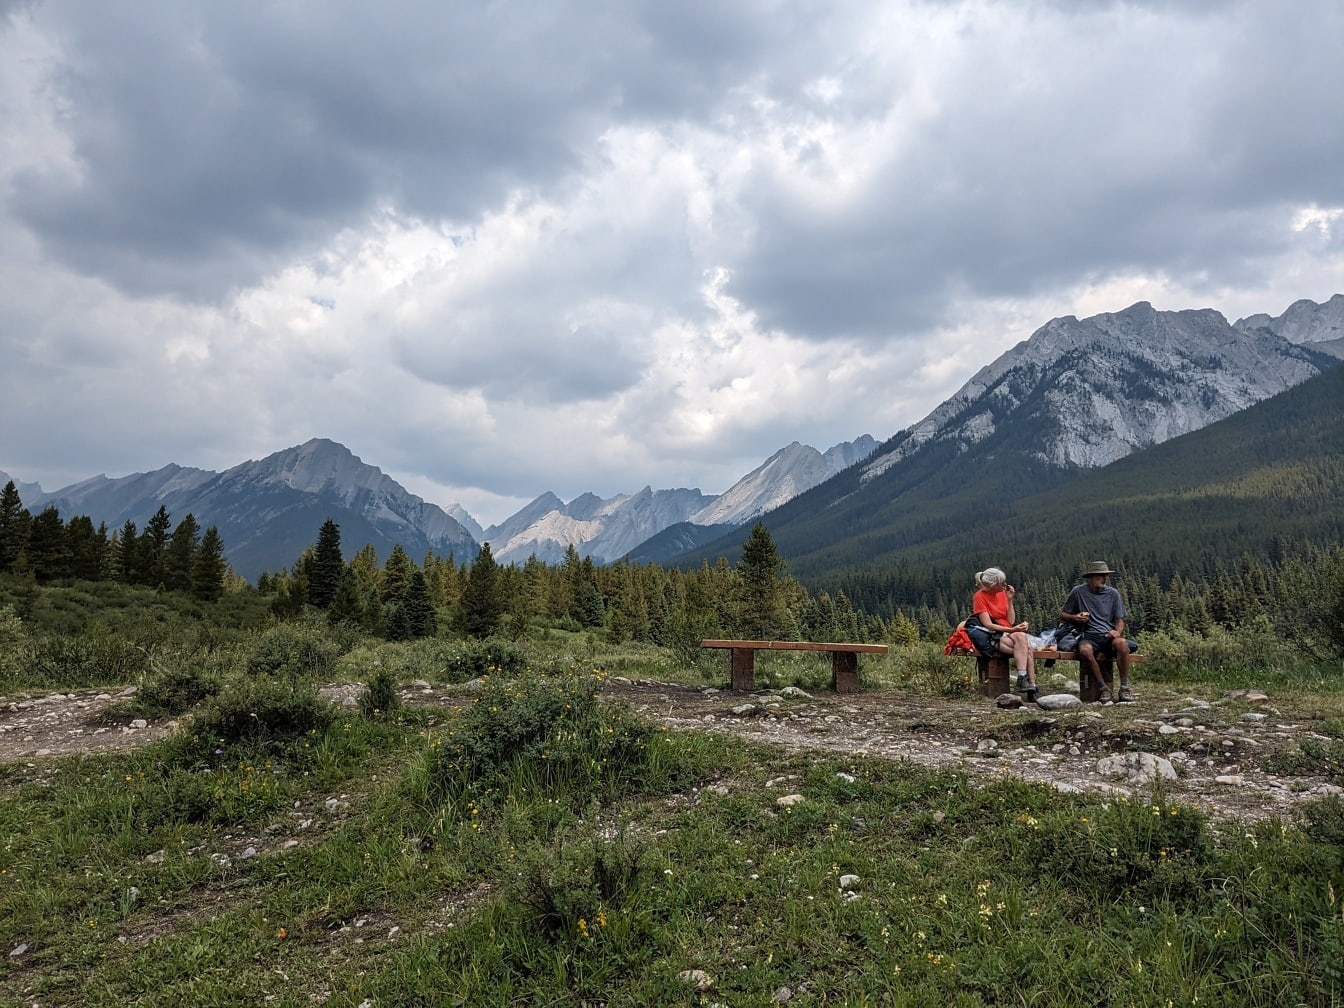 Excursioniști așezați pe bancă în munții din parcul național Canada